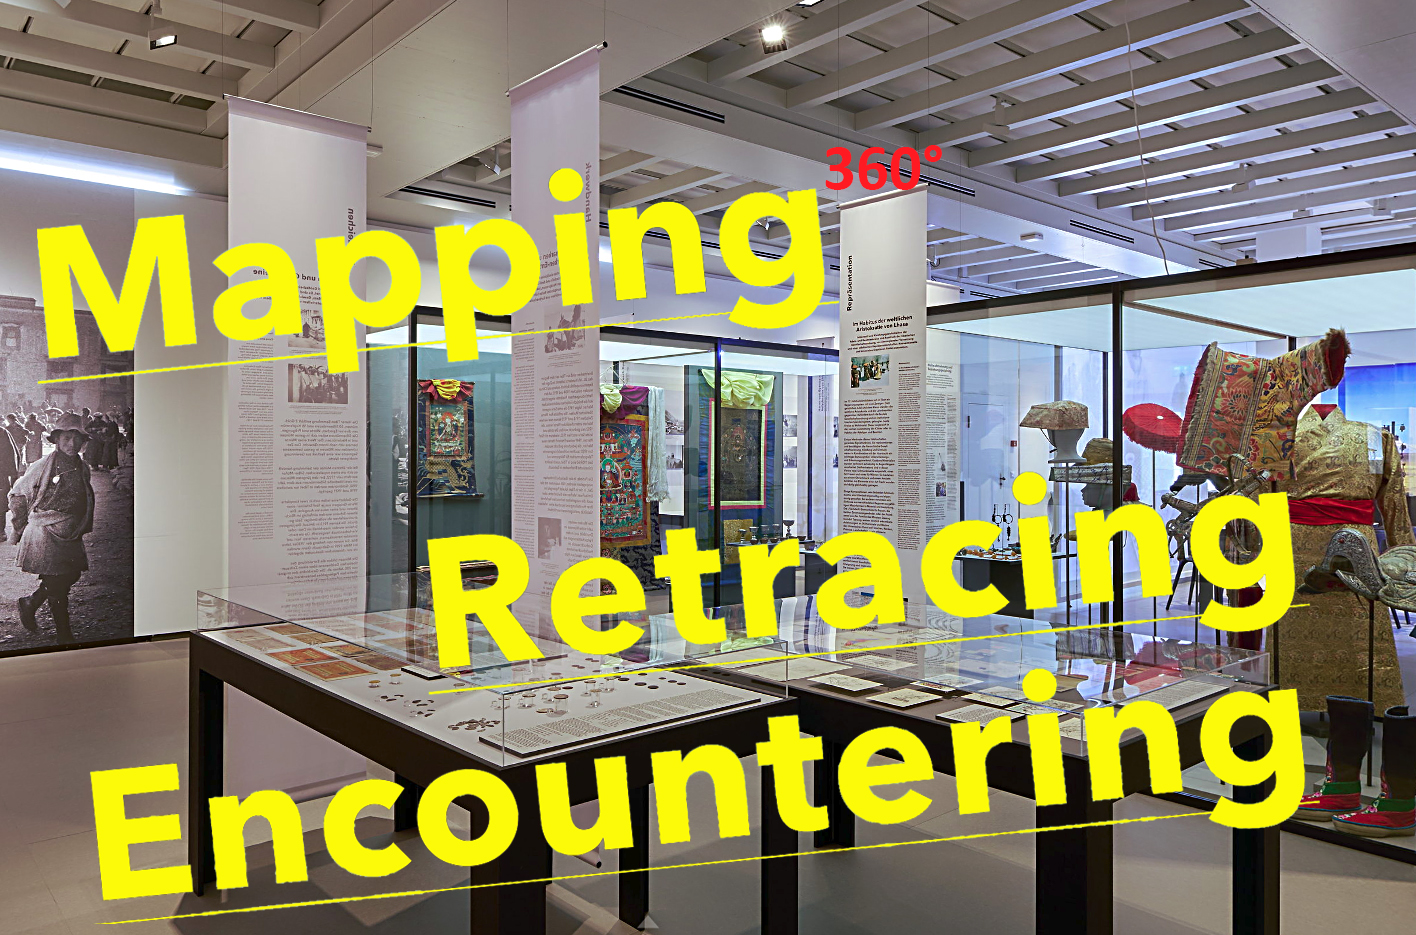 Mapping Retracing Encountering